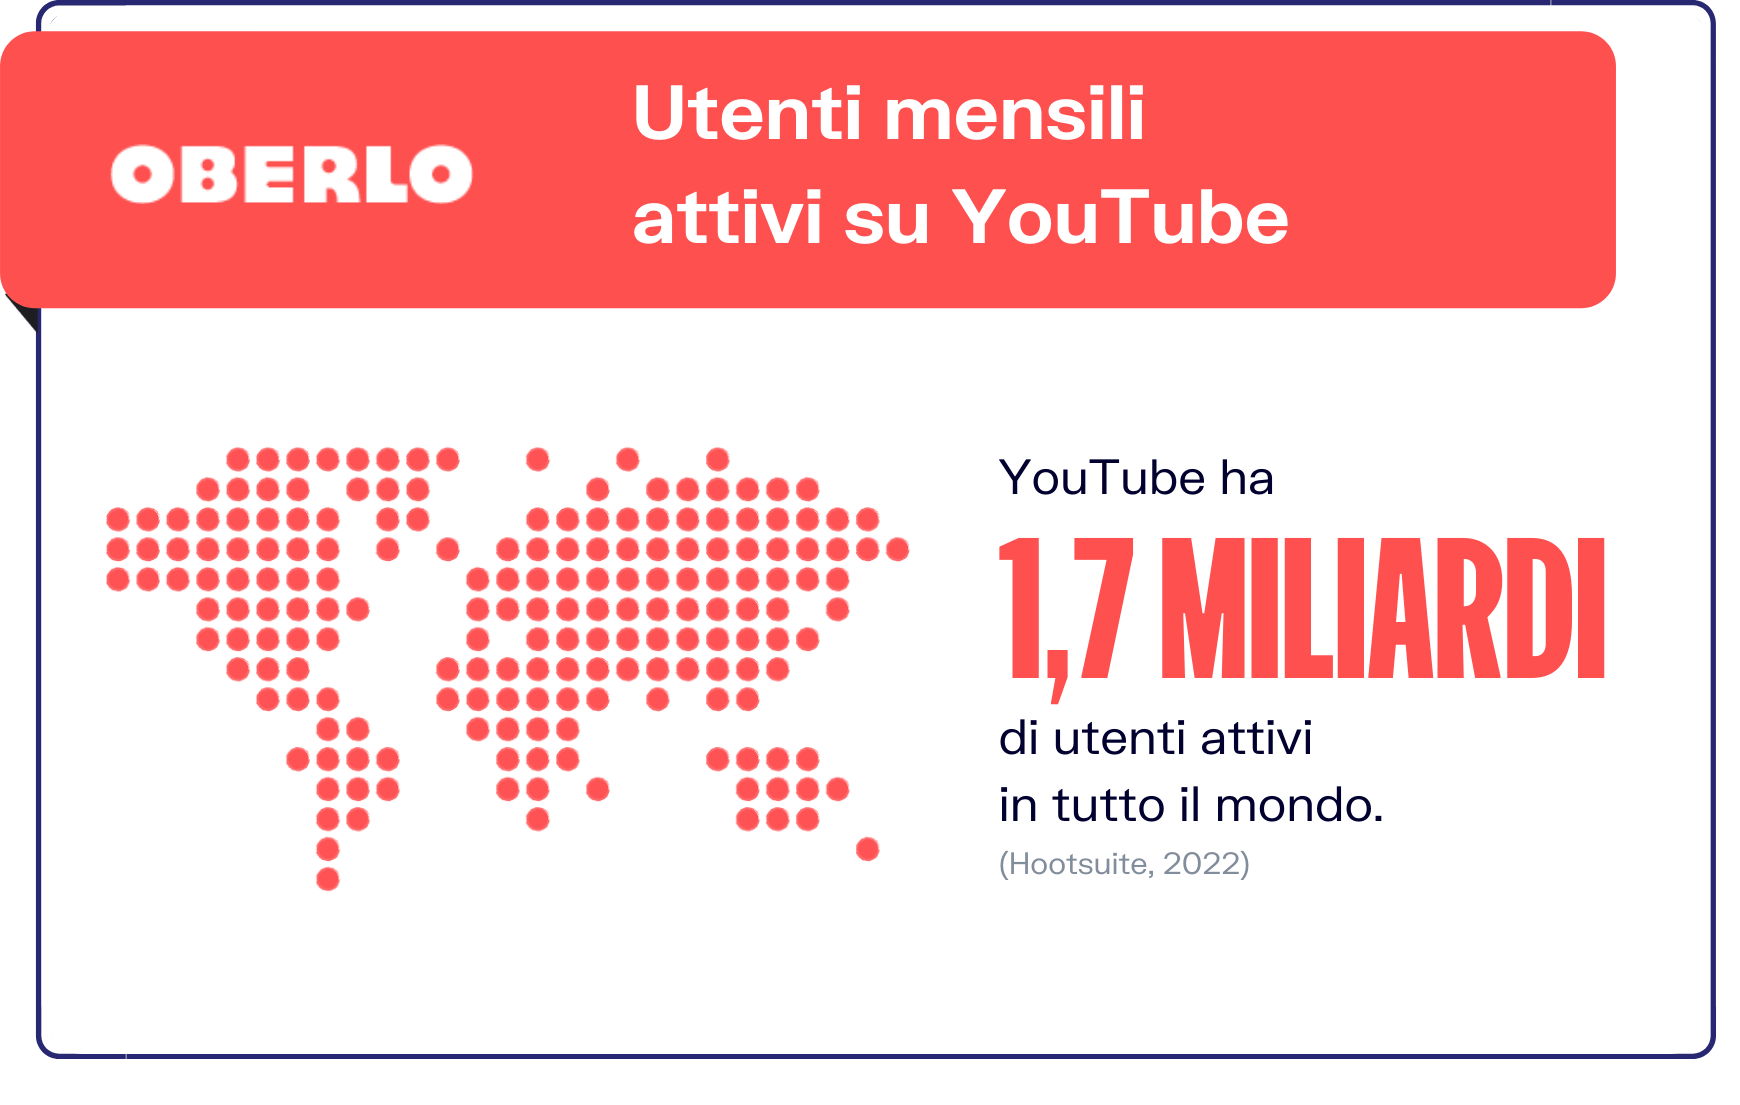 Statistiche youtube - utenti mensili attivi su YouTube